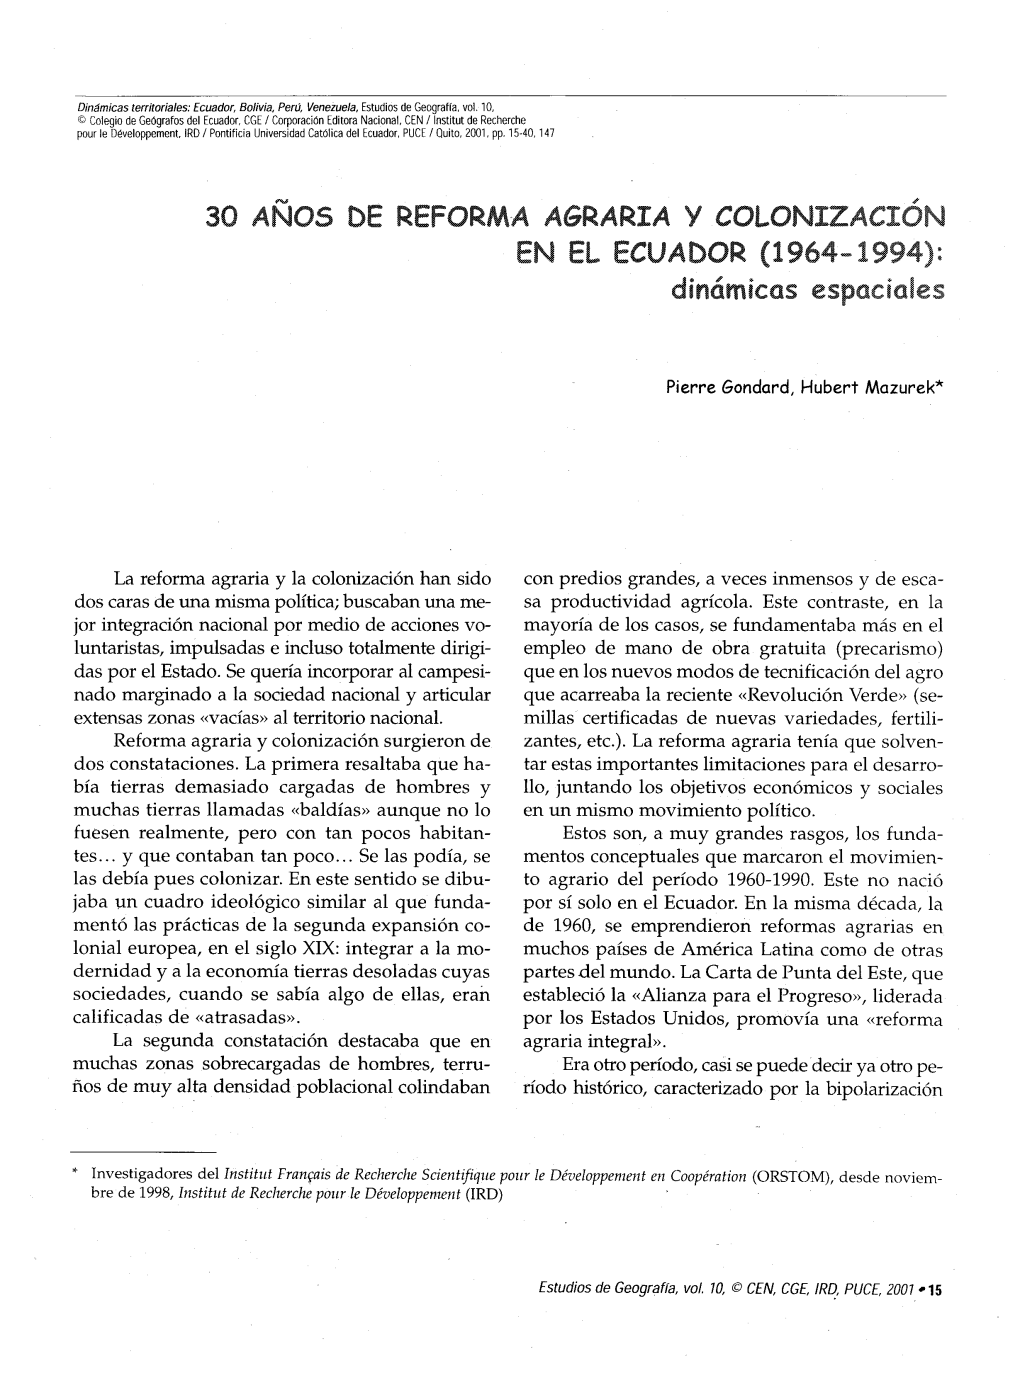 30 Anos De Reforma Agraria Y Colonizacion En El Ecuador : 1964